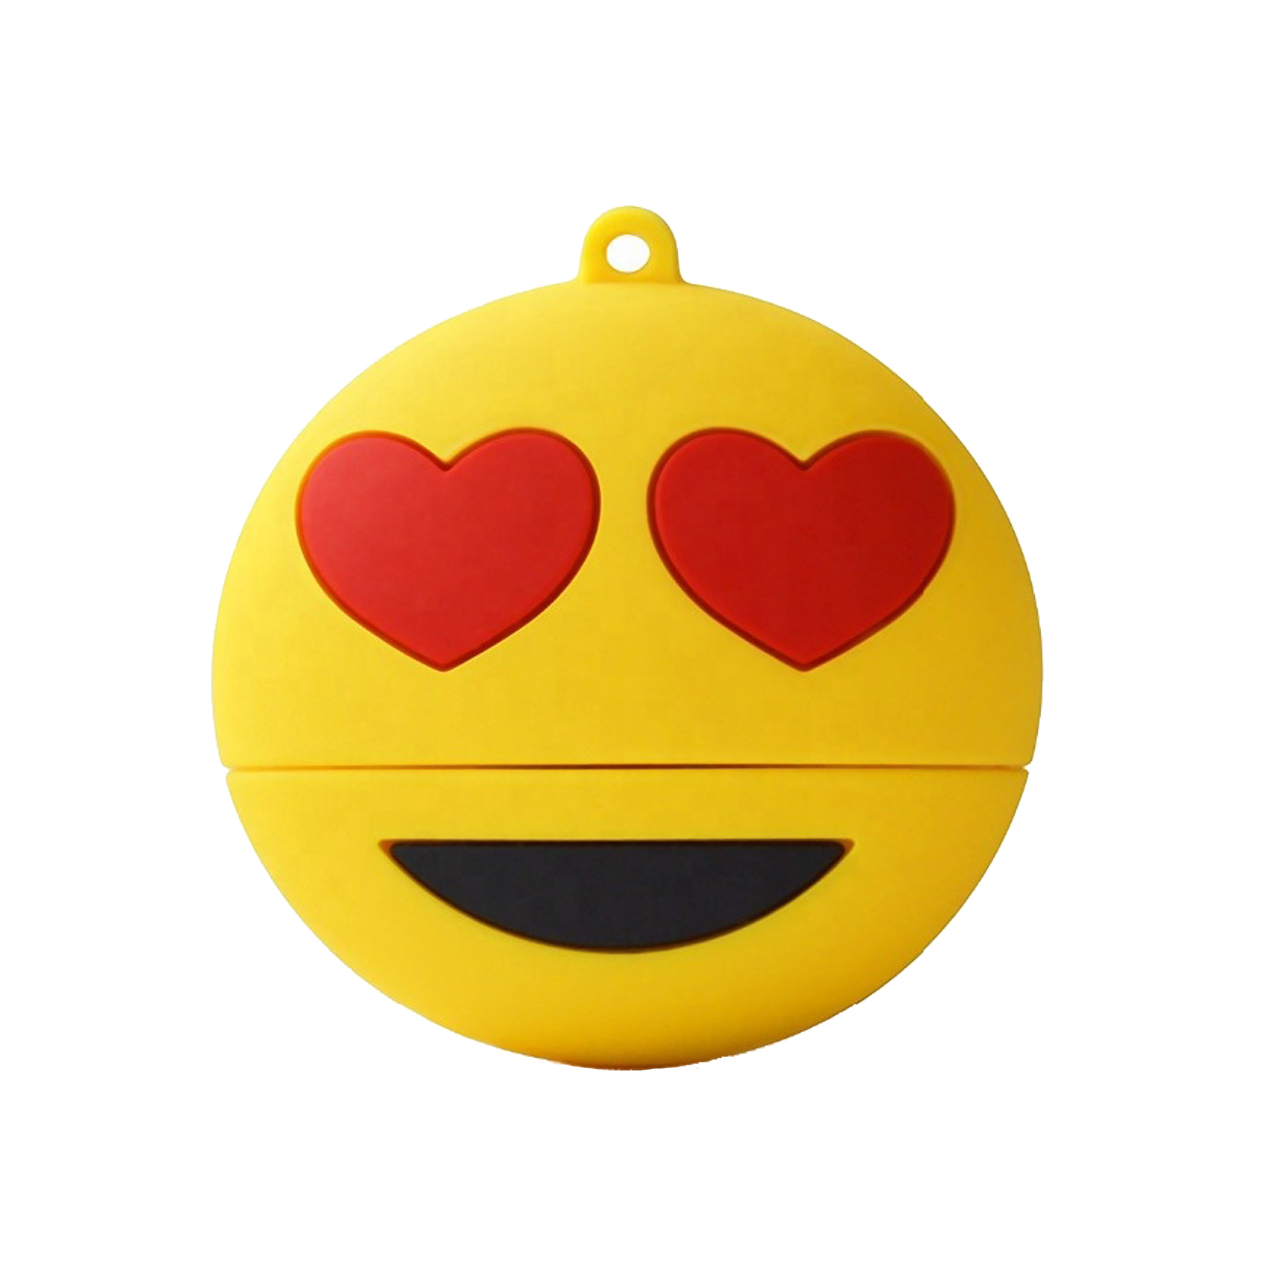 فلش مموری طرح ایموجی عشق مدل Ul-Emoji03 ظرفیت 32 گیگابایت